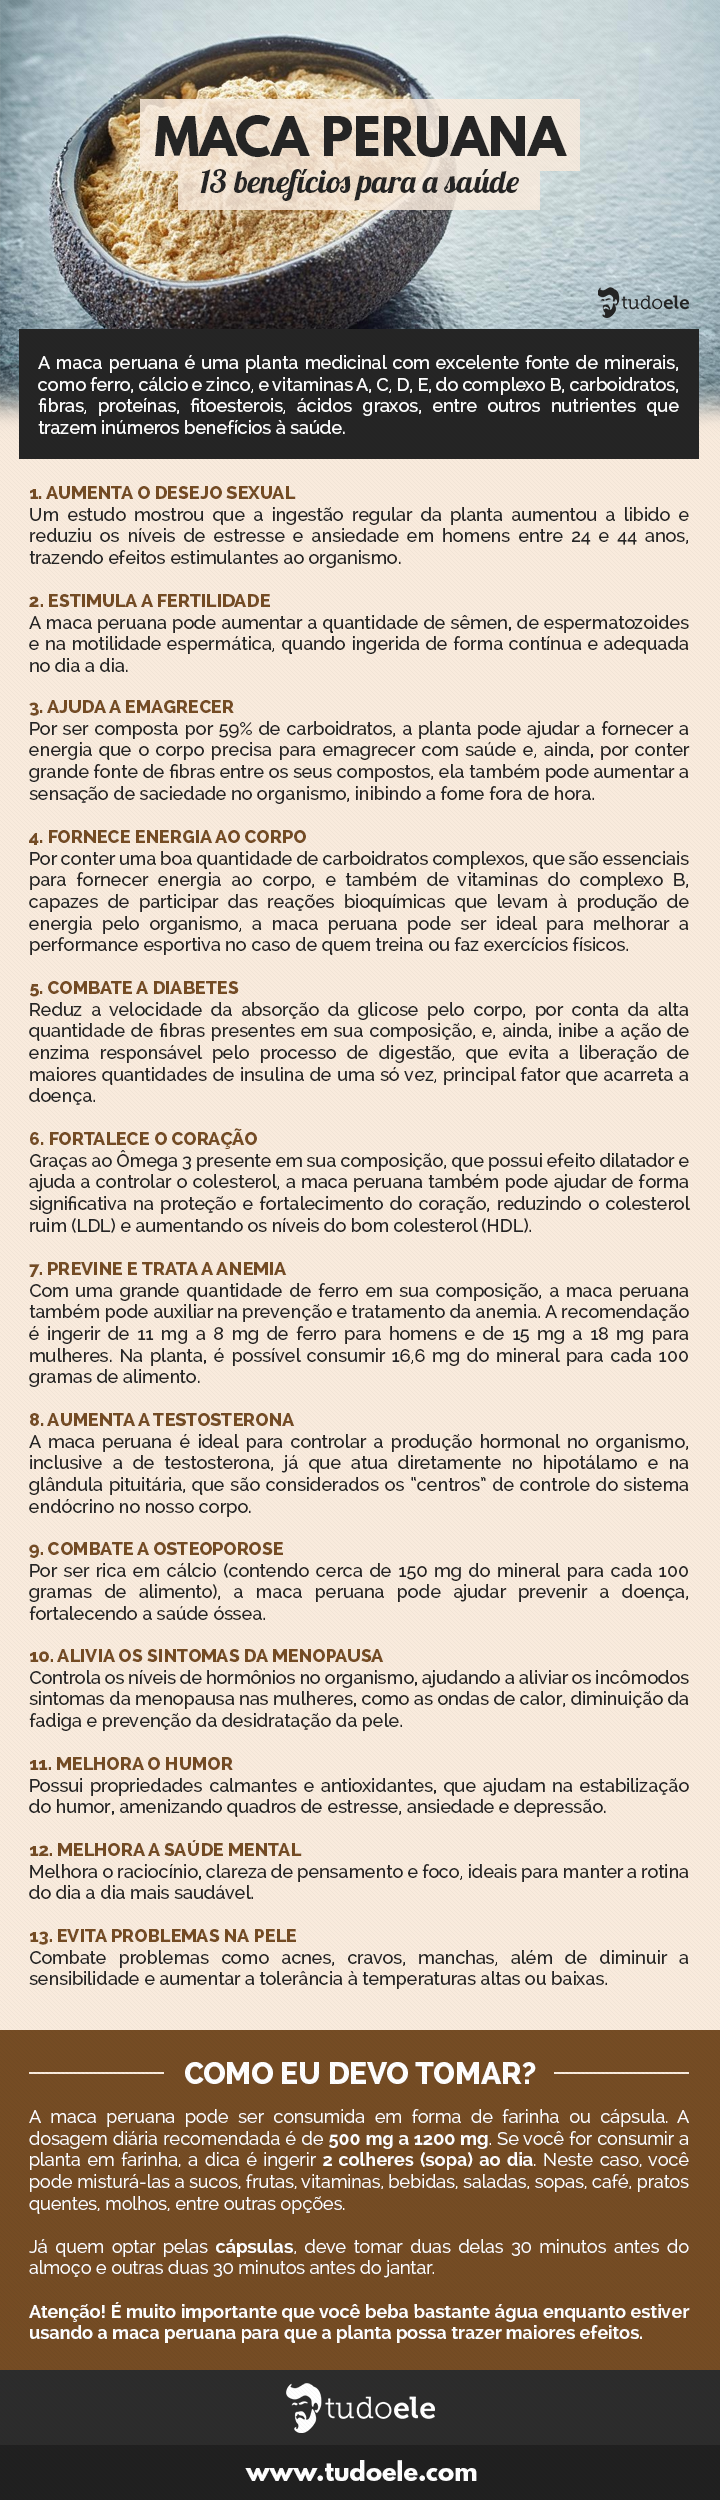 Maca Peruana Infográfico: 13 benefícios para a saúde